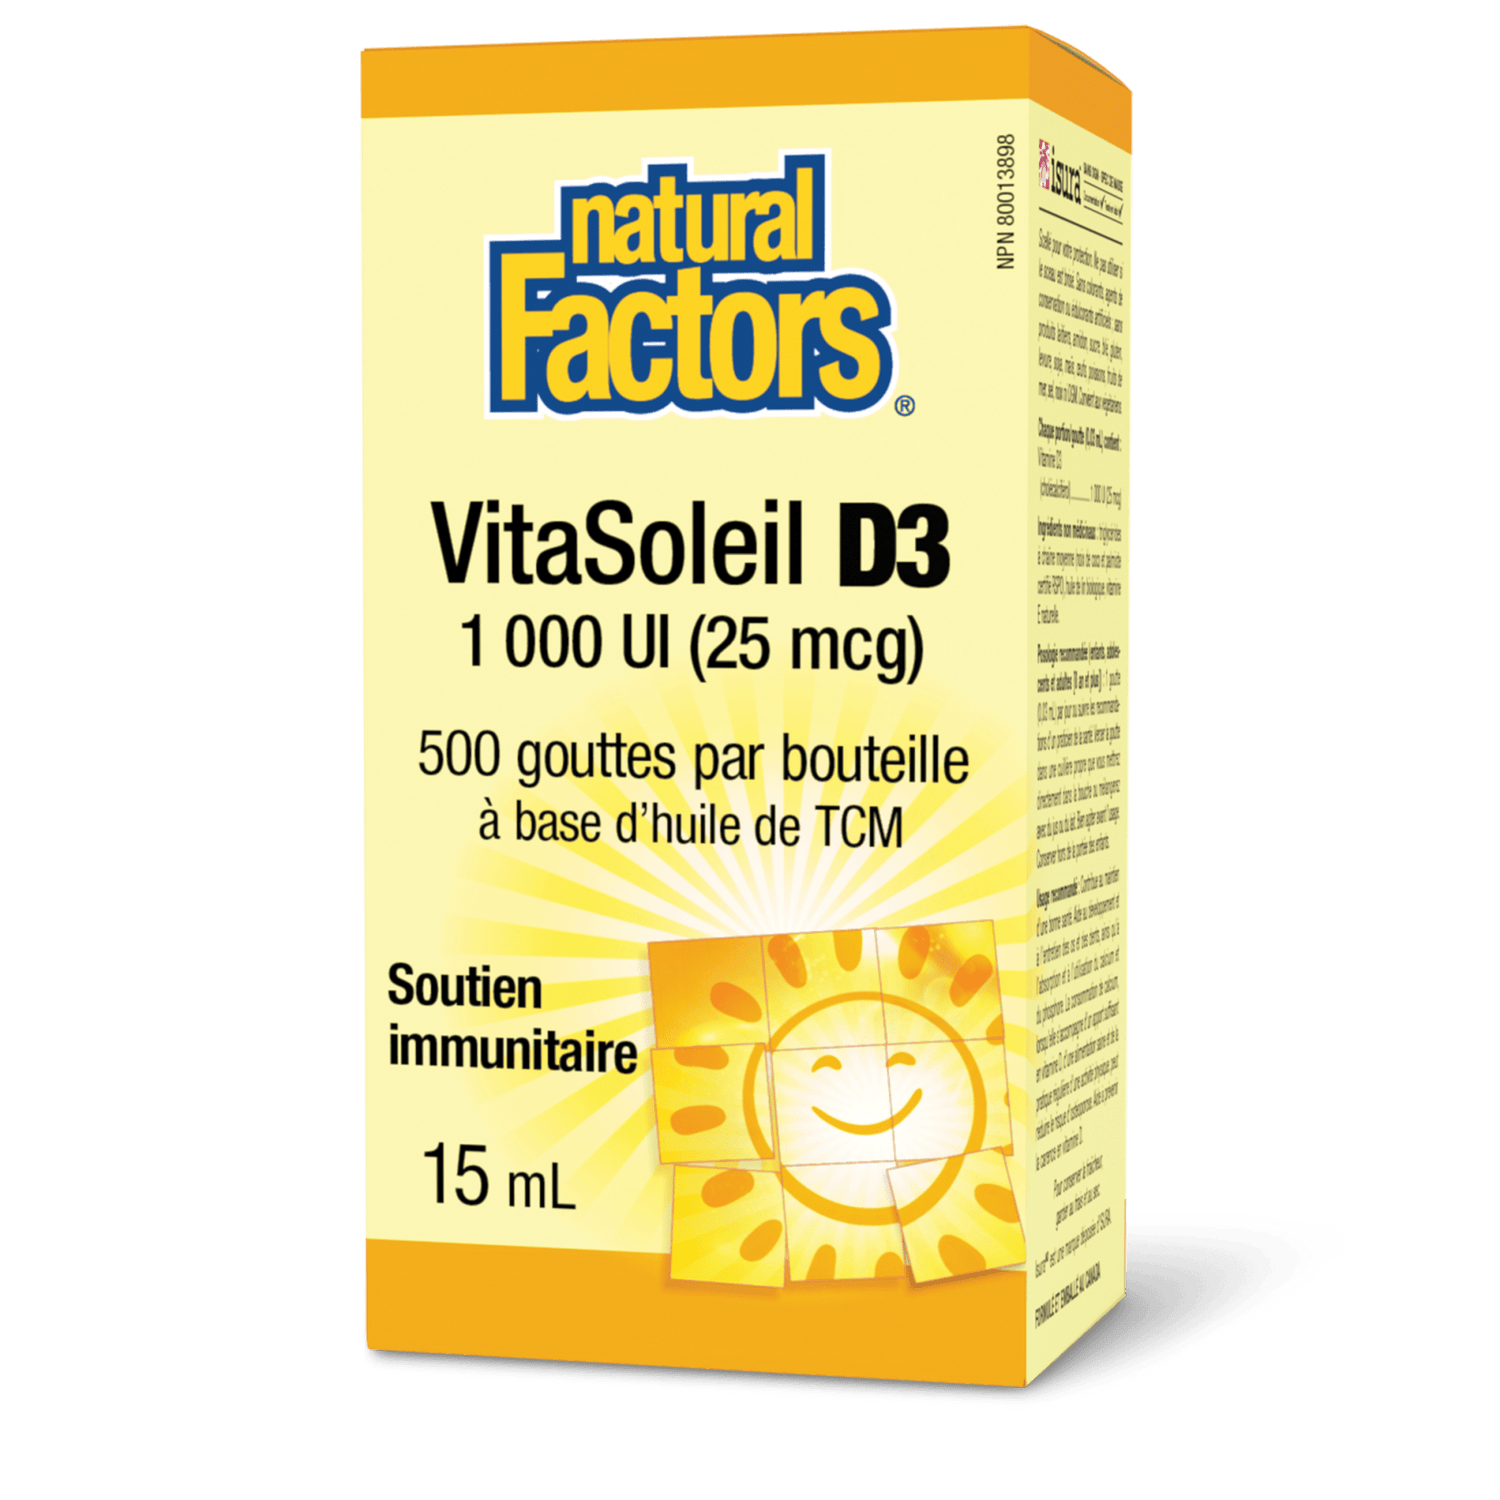 VitaSoleil D3 1 000 UI, Natural Factors|v|image|1055